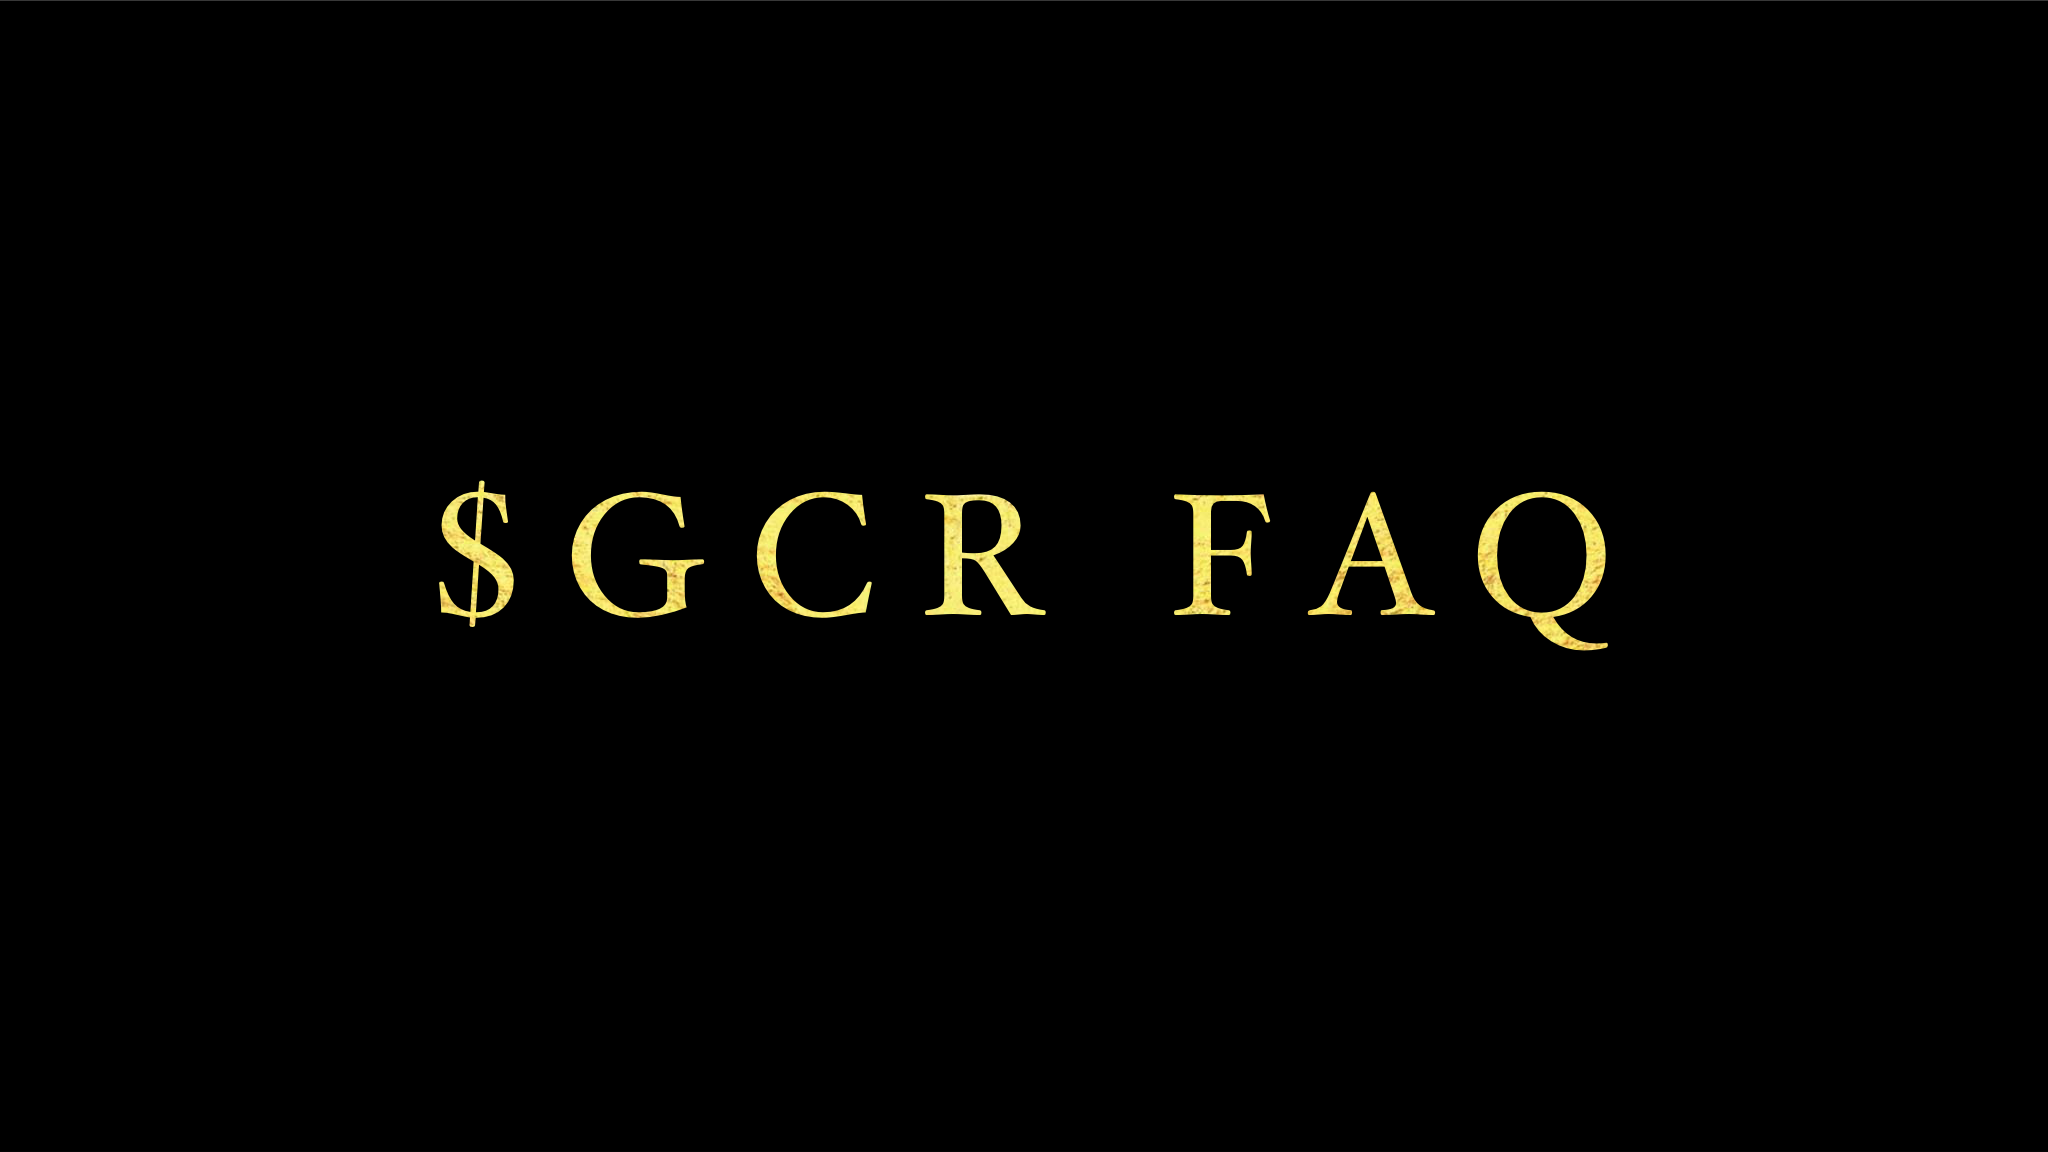 $GCR FAQ